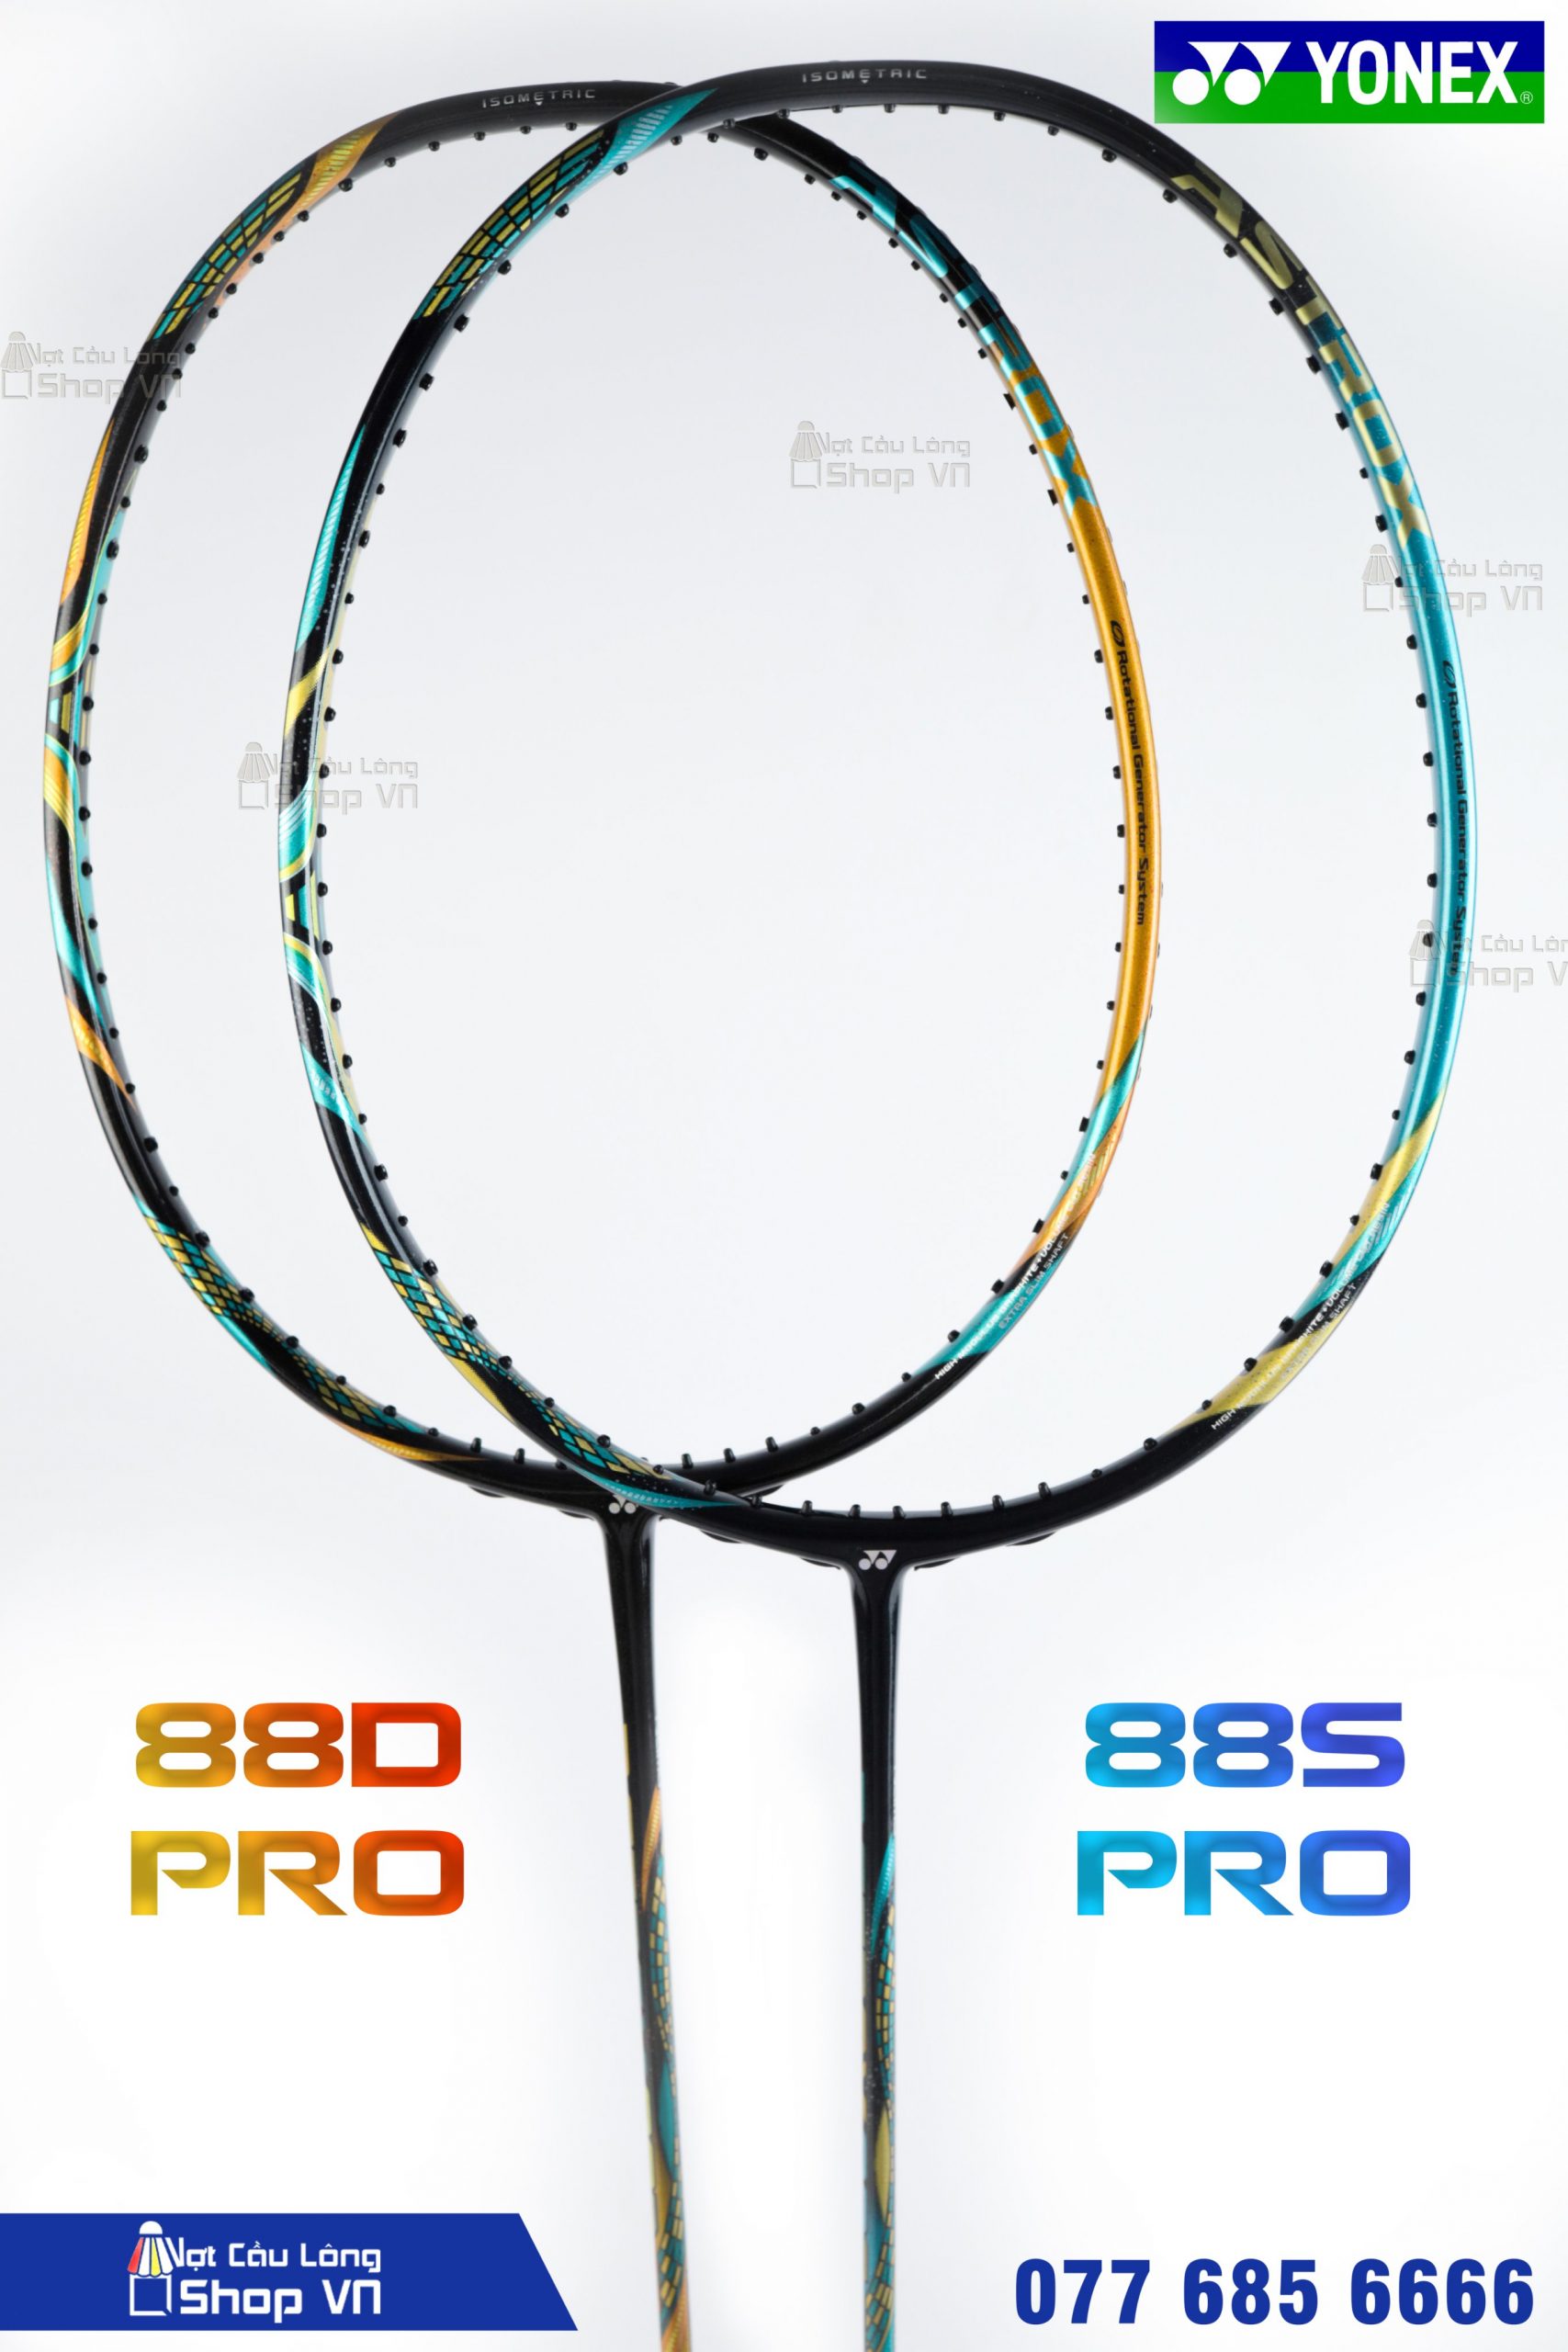 Astrox88S Pro và Astrox 88D Pro